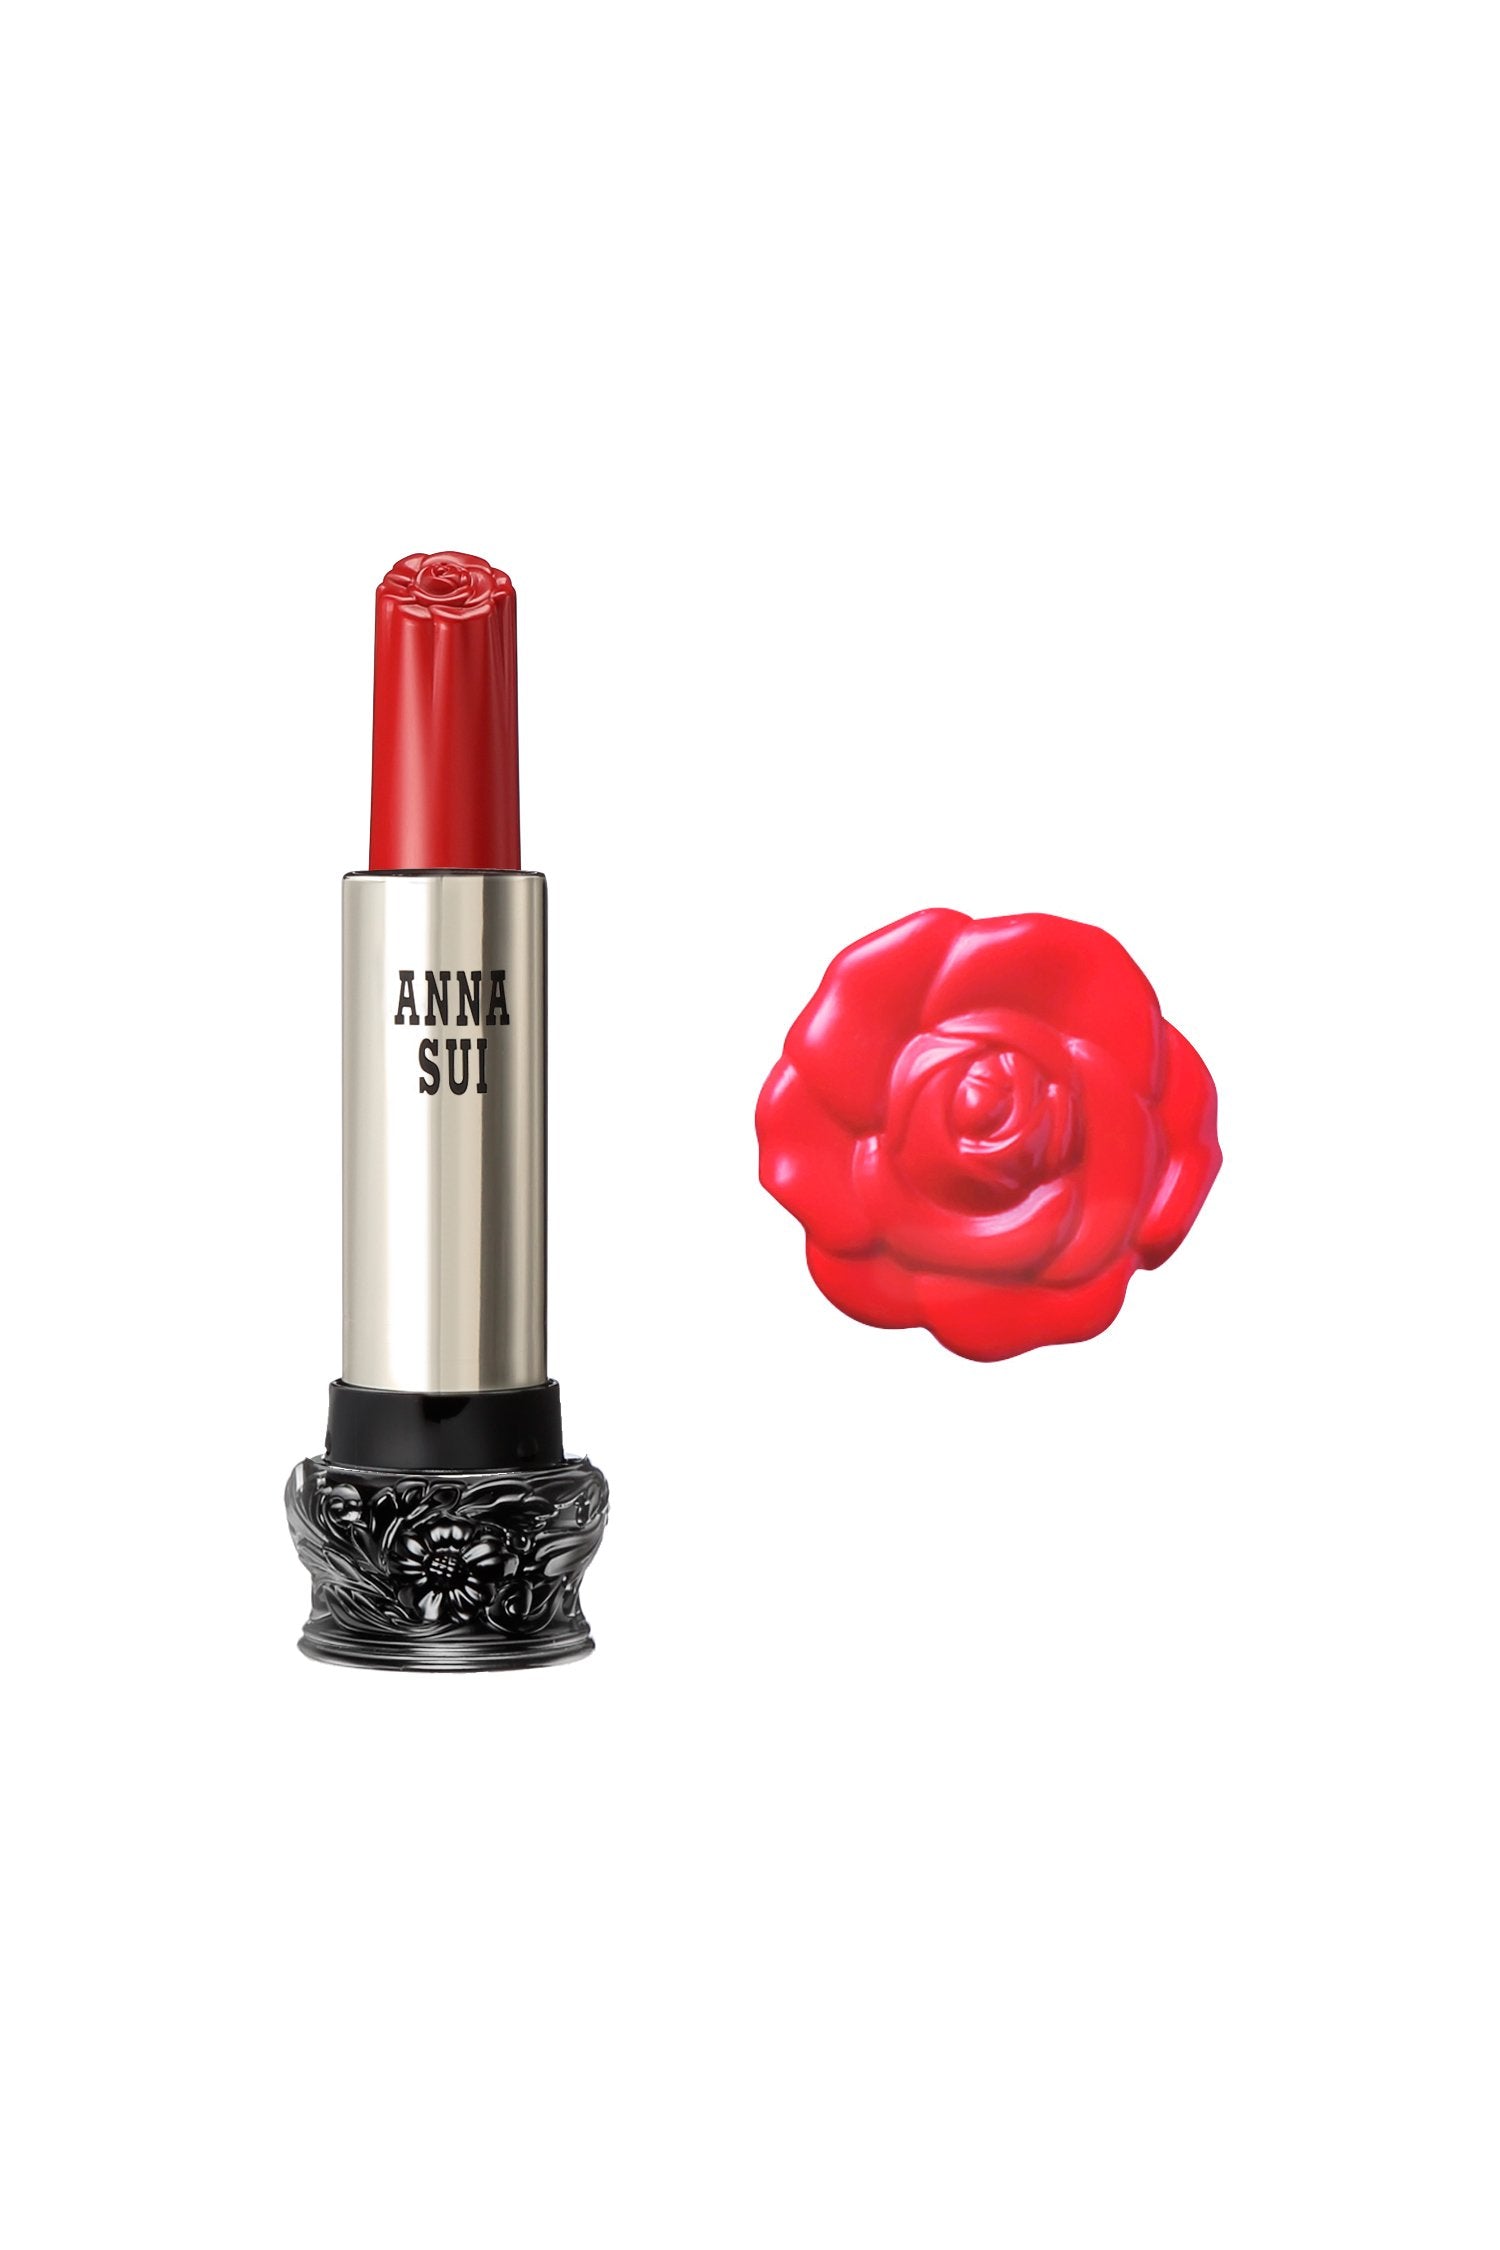 401 - Rossetto Garofano Rosso F: Fairy Flower, in contenitore cilindrico, base nera grande, disegno floreale inciso, corpo metallico